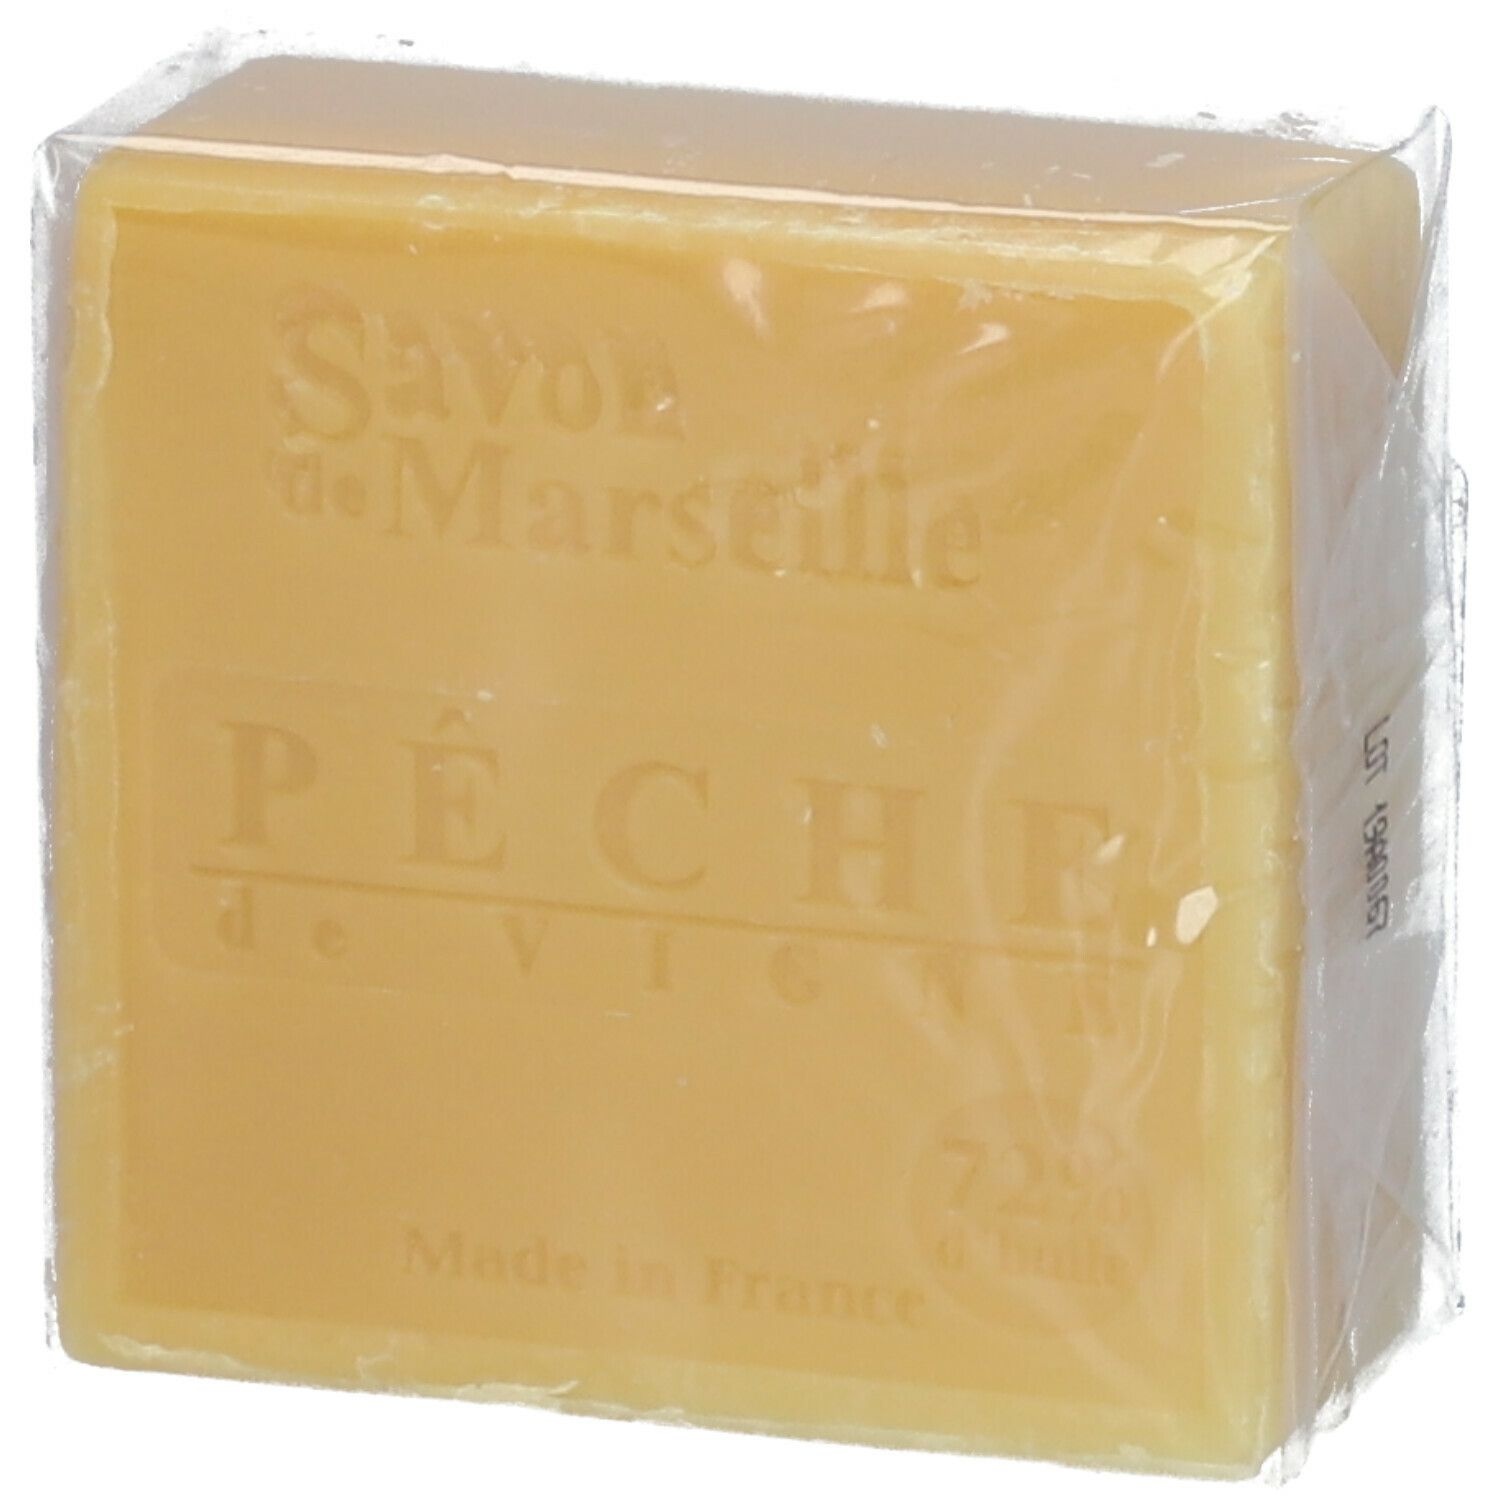 Estipharm savon de Marseille parfumé 100 g savon